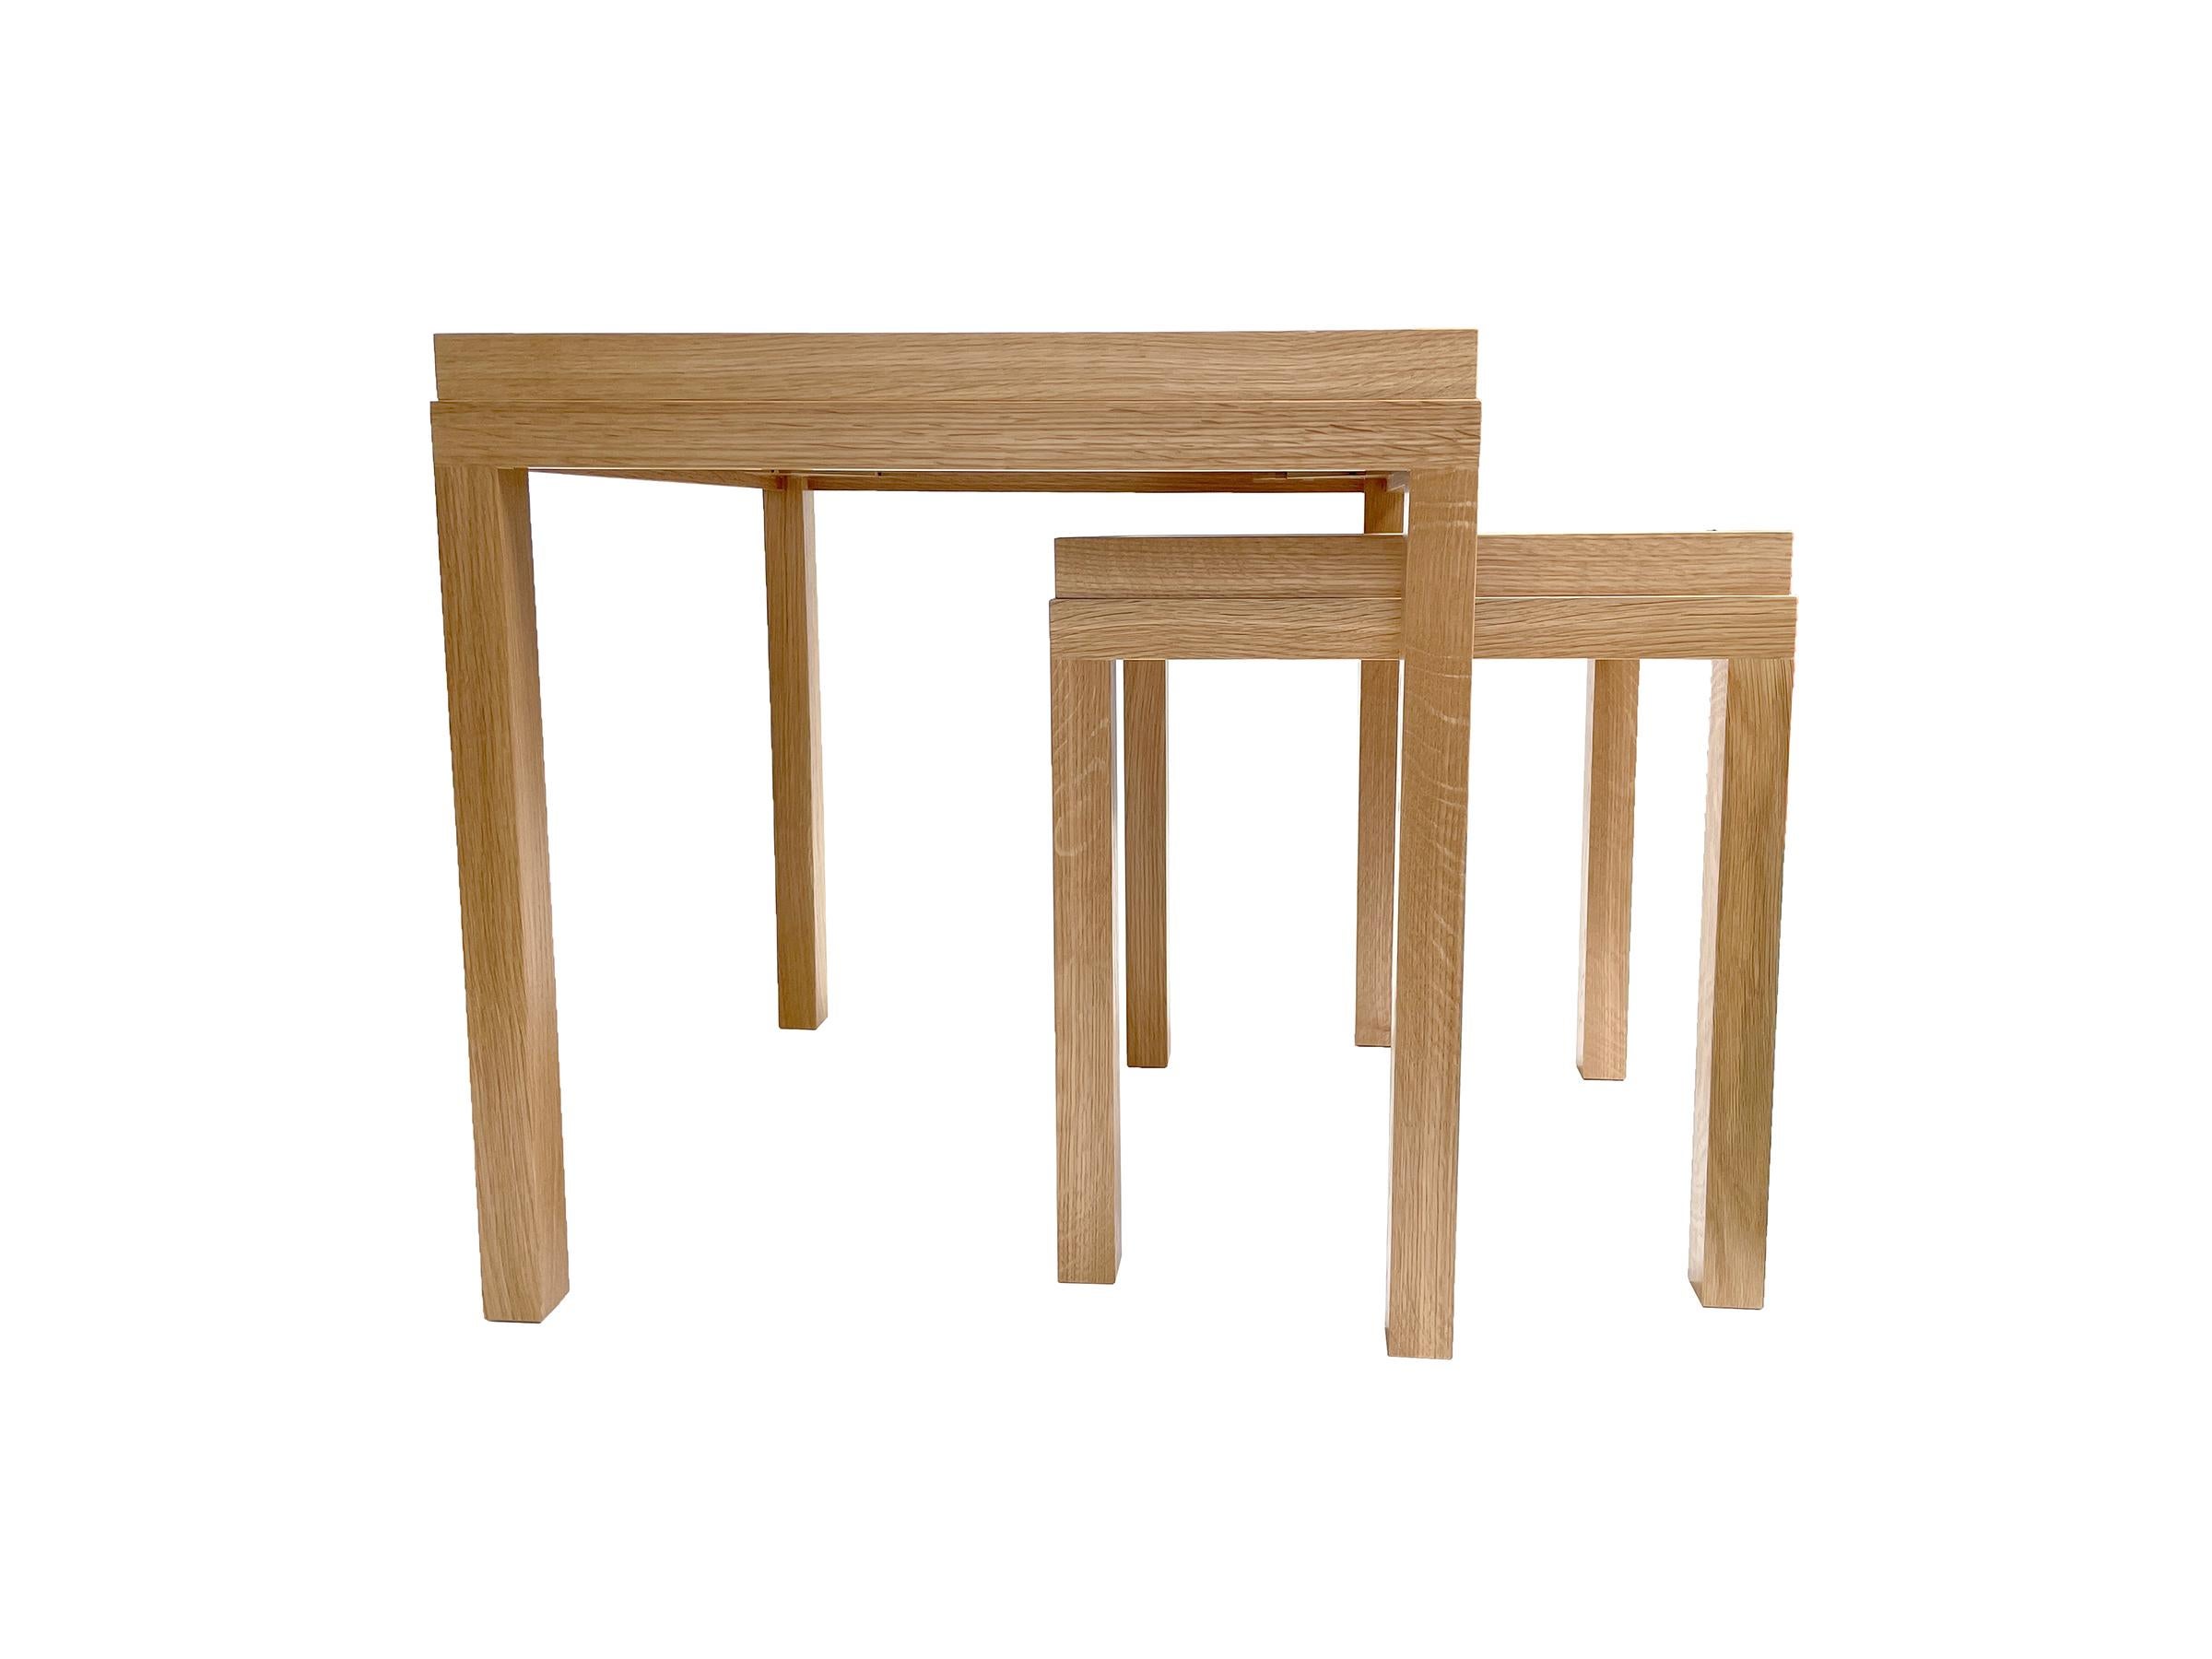 Wir stellen die Mystic Nesting Tables von Ercole Home vor - ein exquisites Tischset, das die perfekte Kombination aus moderner Schlichtheit und raffinierter, zeitloser Eleganz darstellt. Die sauberen und modernen Sockel sind aus naturbelassenem